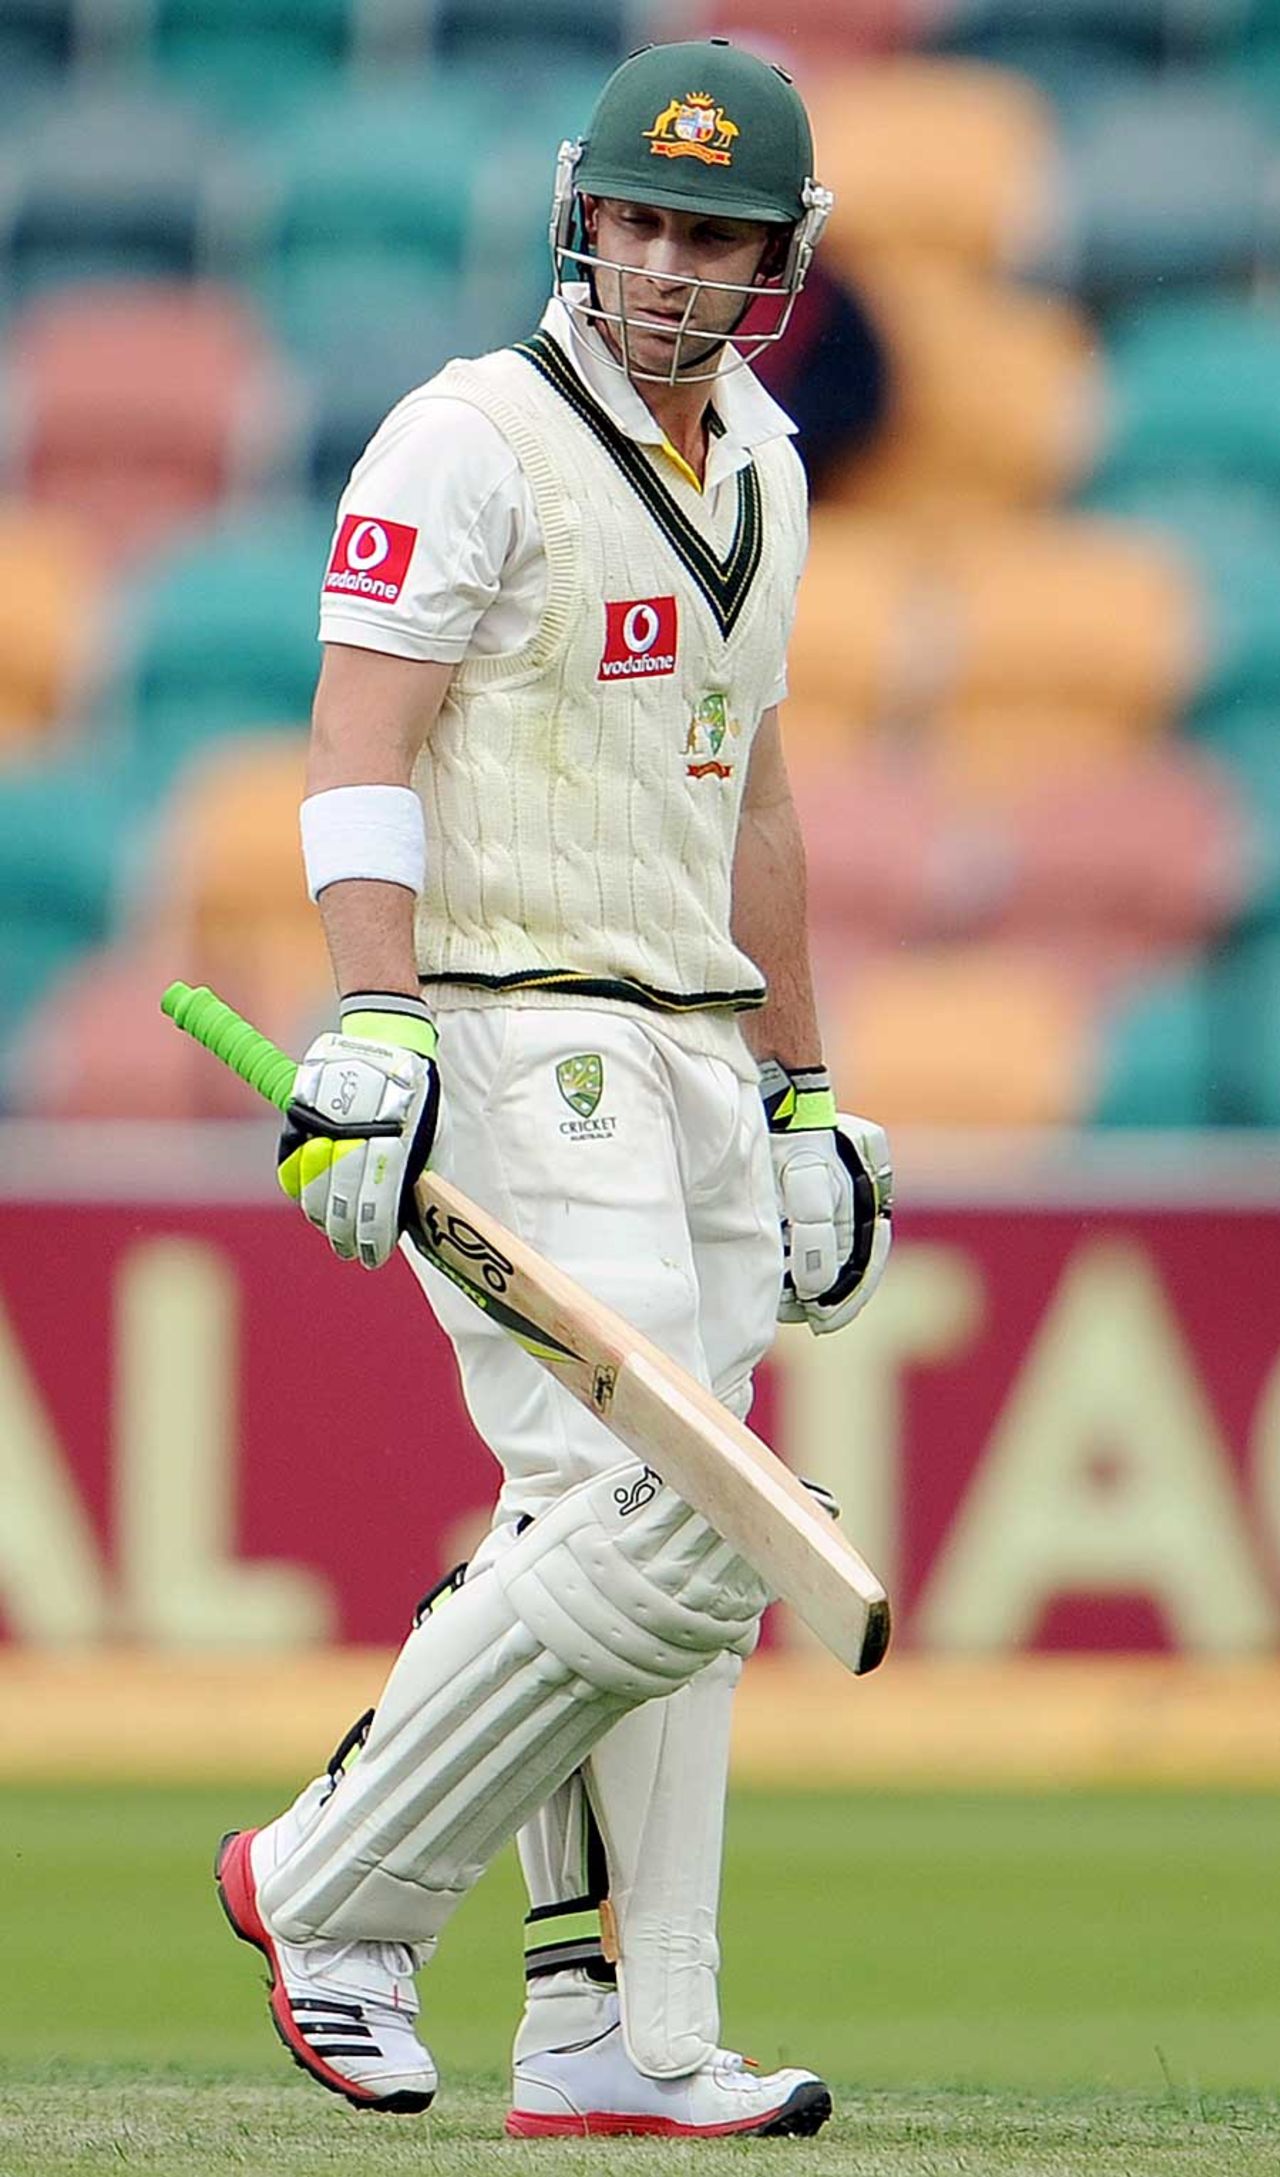 Phillip Hughes walks back after being dismissed, Australia v New Zealand, 2nd Test, Hobart, 1st day, December 9, 2011